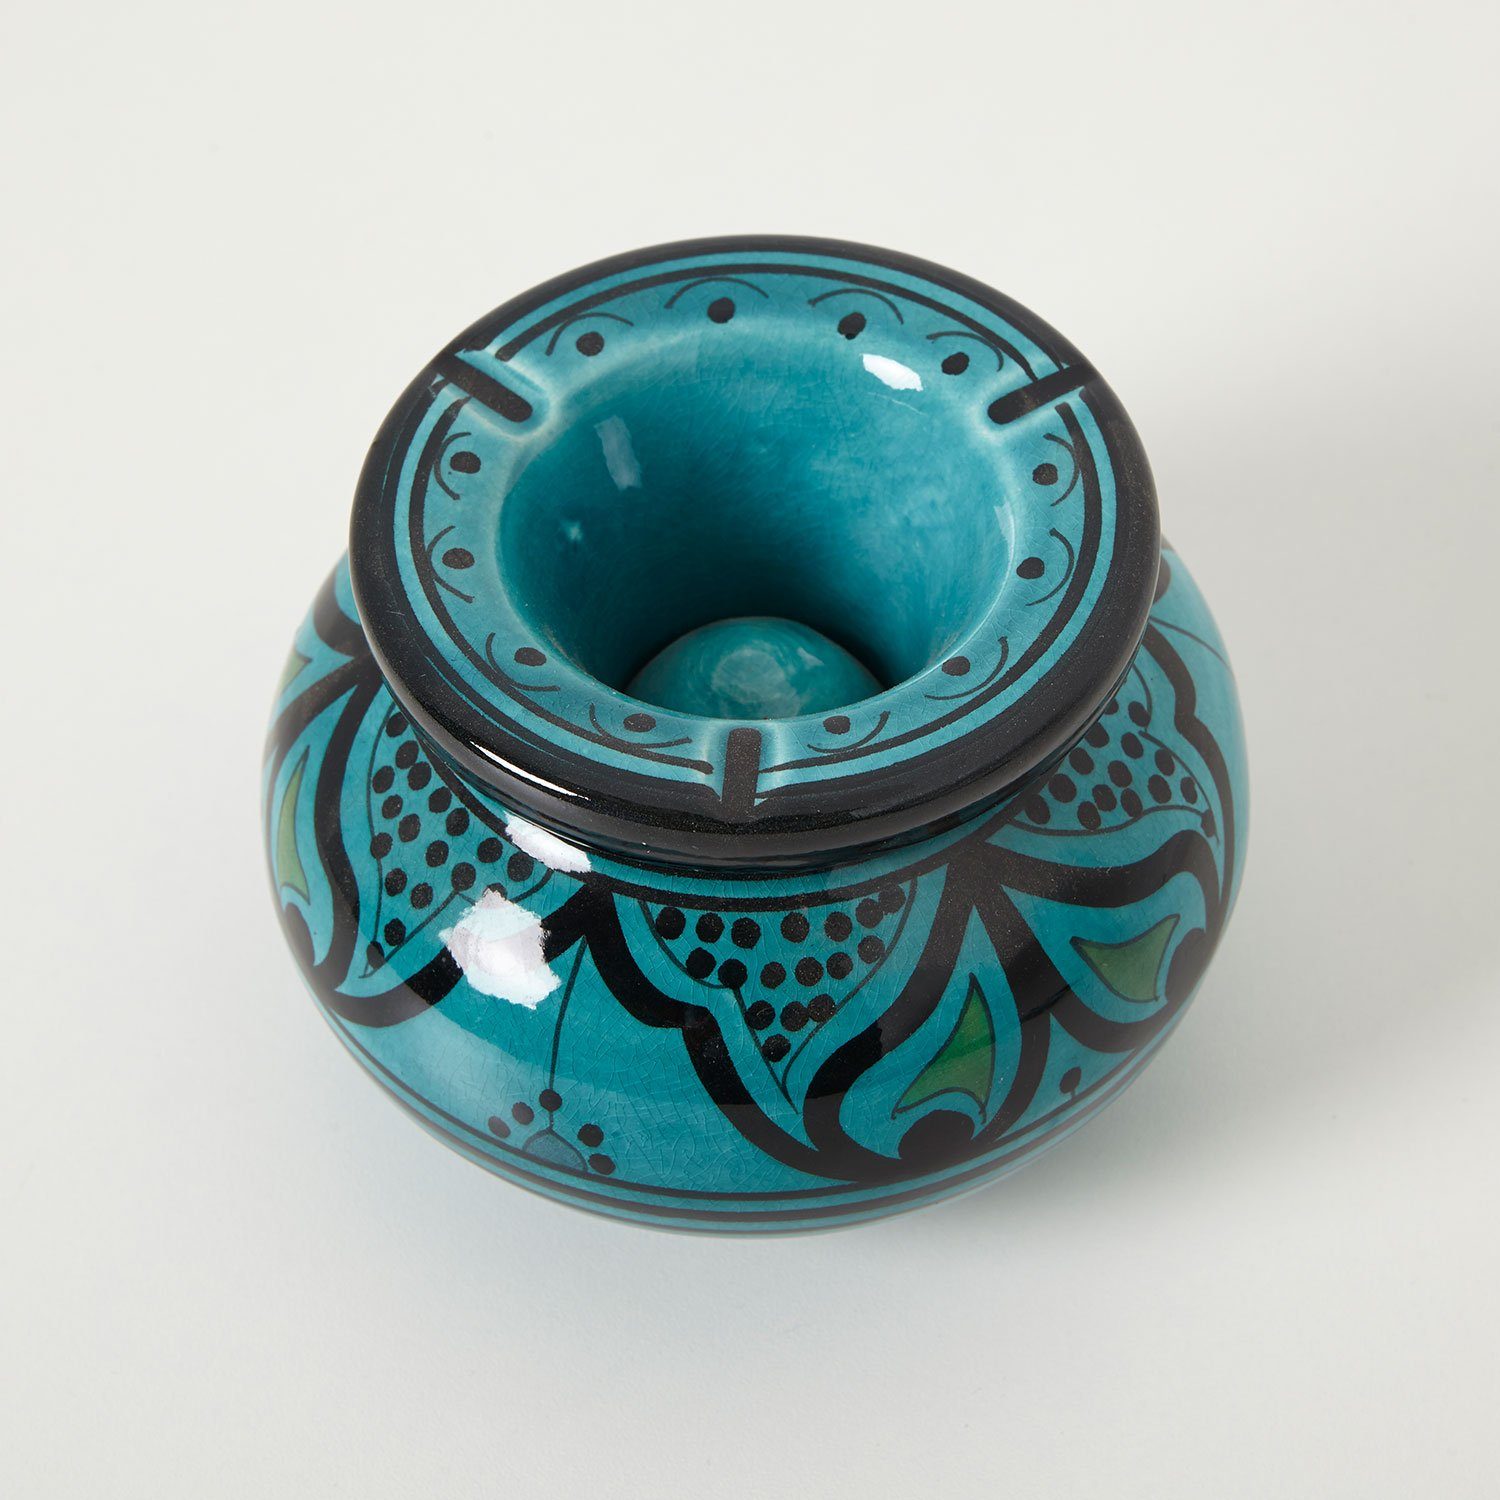 Aschenbecher Provence Sturmaschenbecher Keramik Blau 13,5cm, Aschenbecher, Deko & Wohnaccessoires, Wohnen